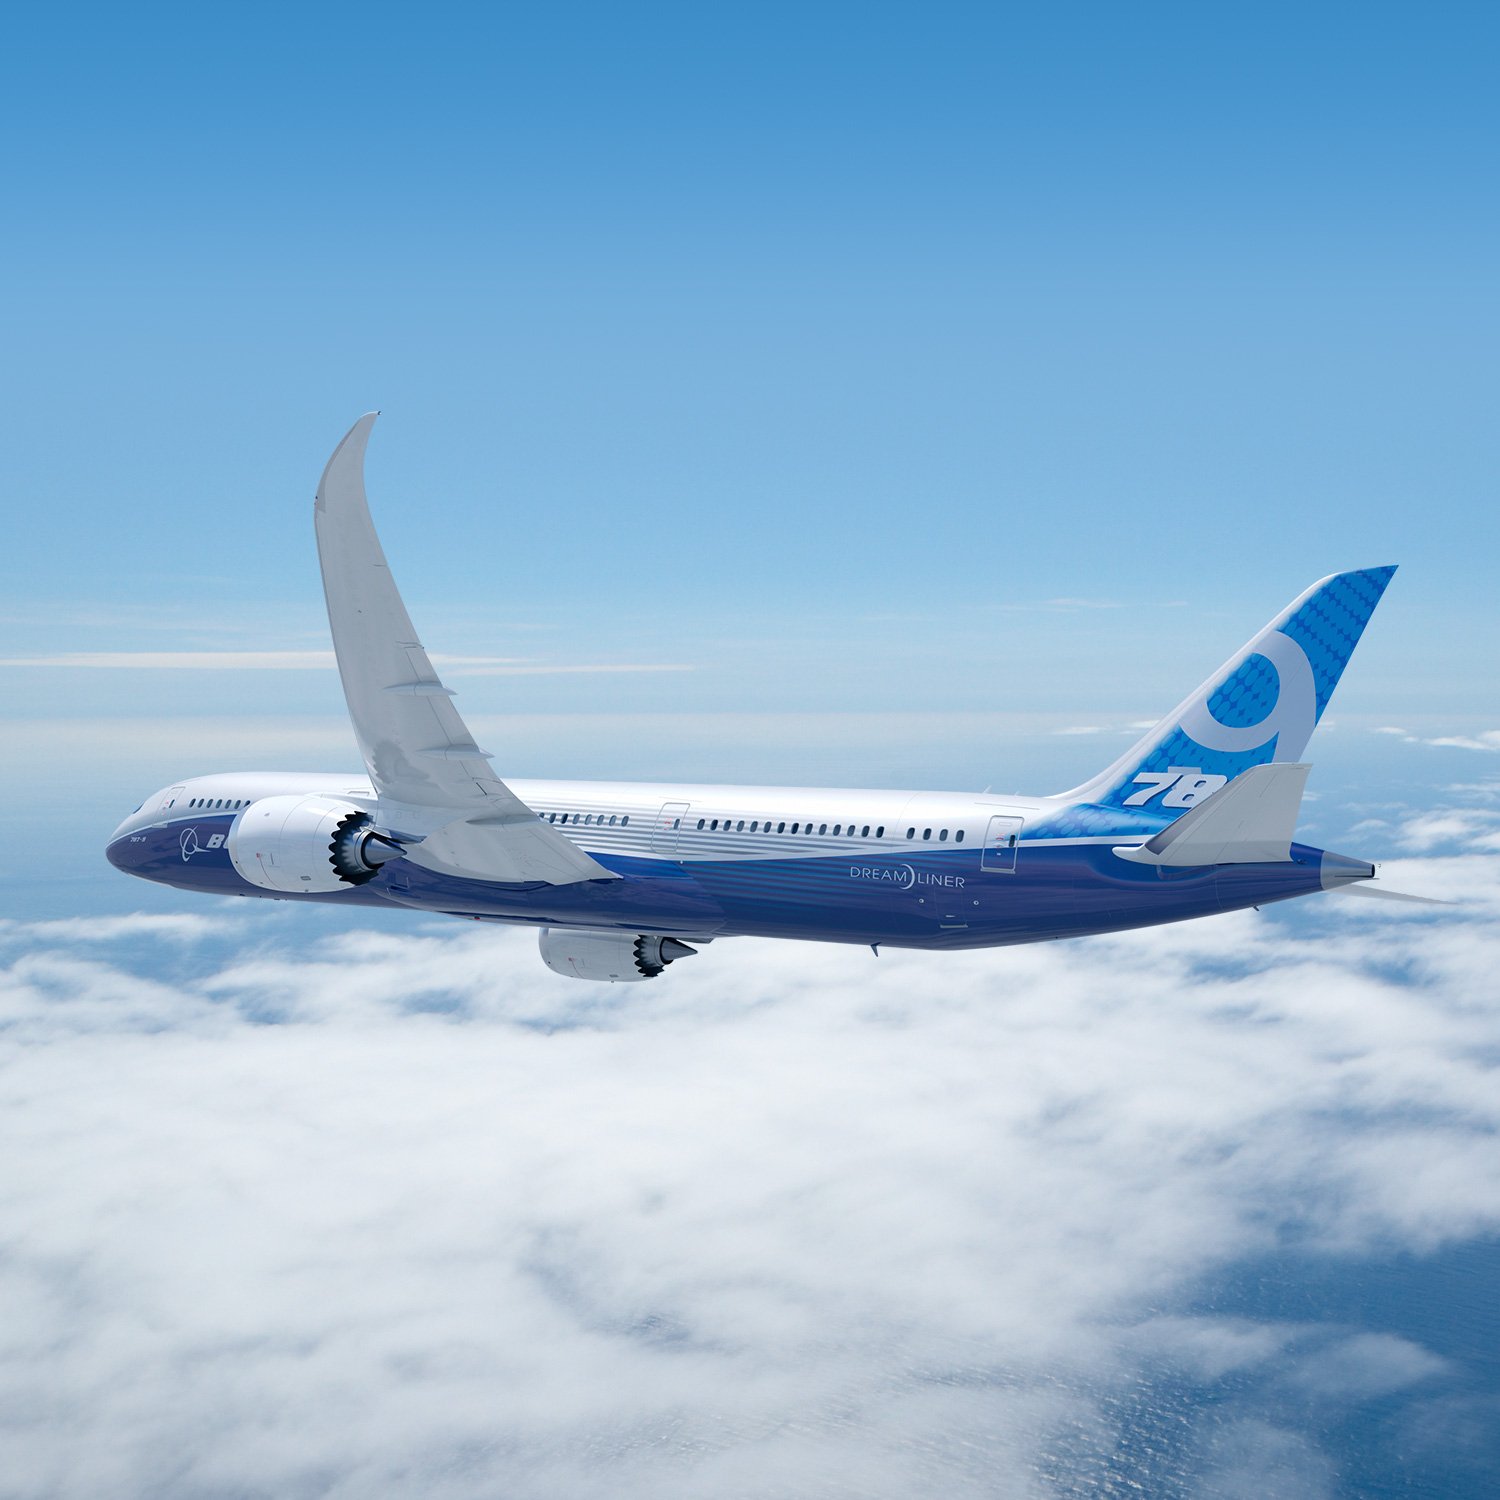 Boeing 787 9 dreamliner